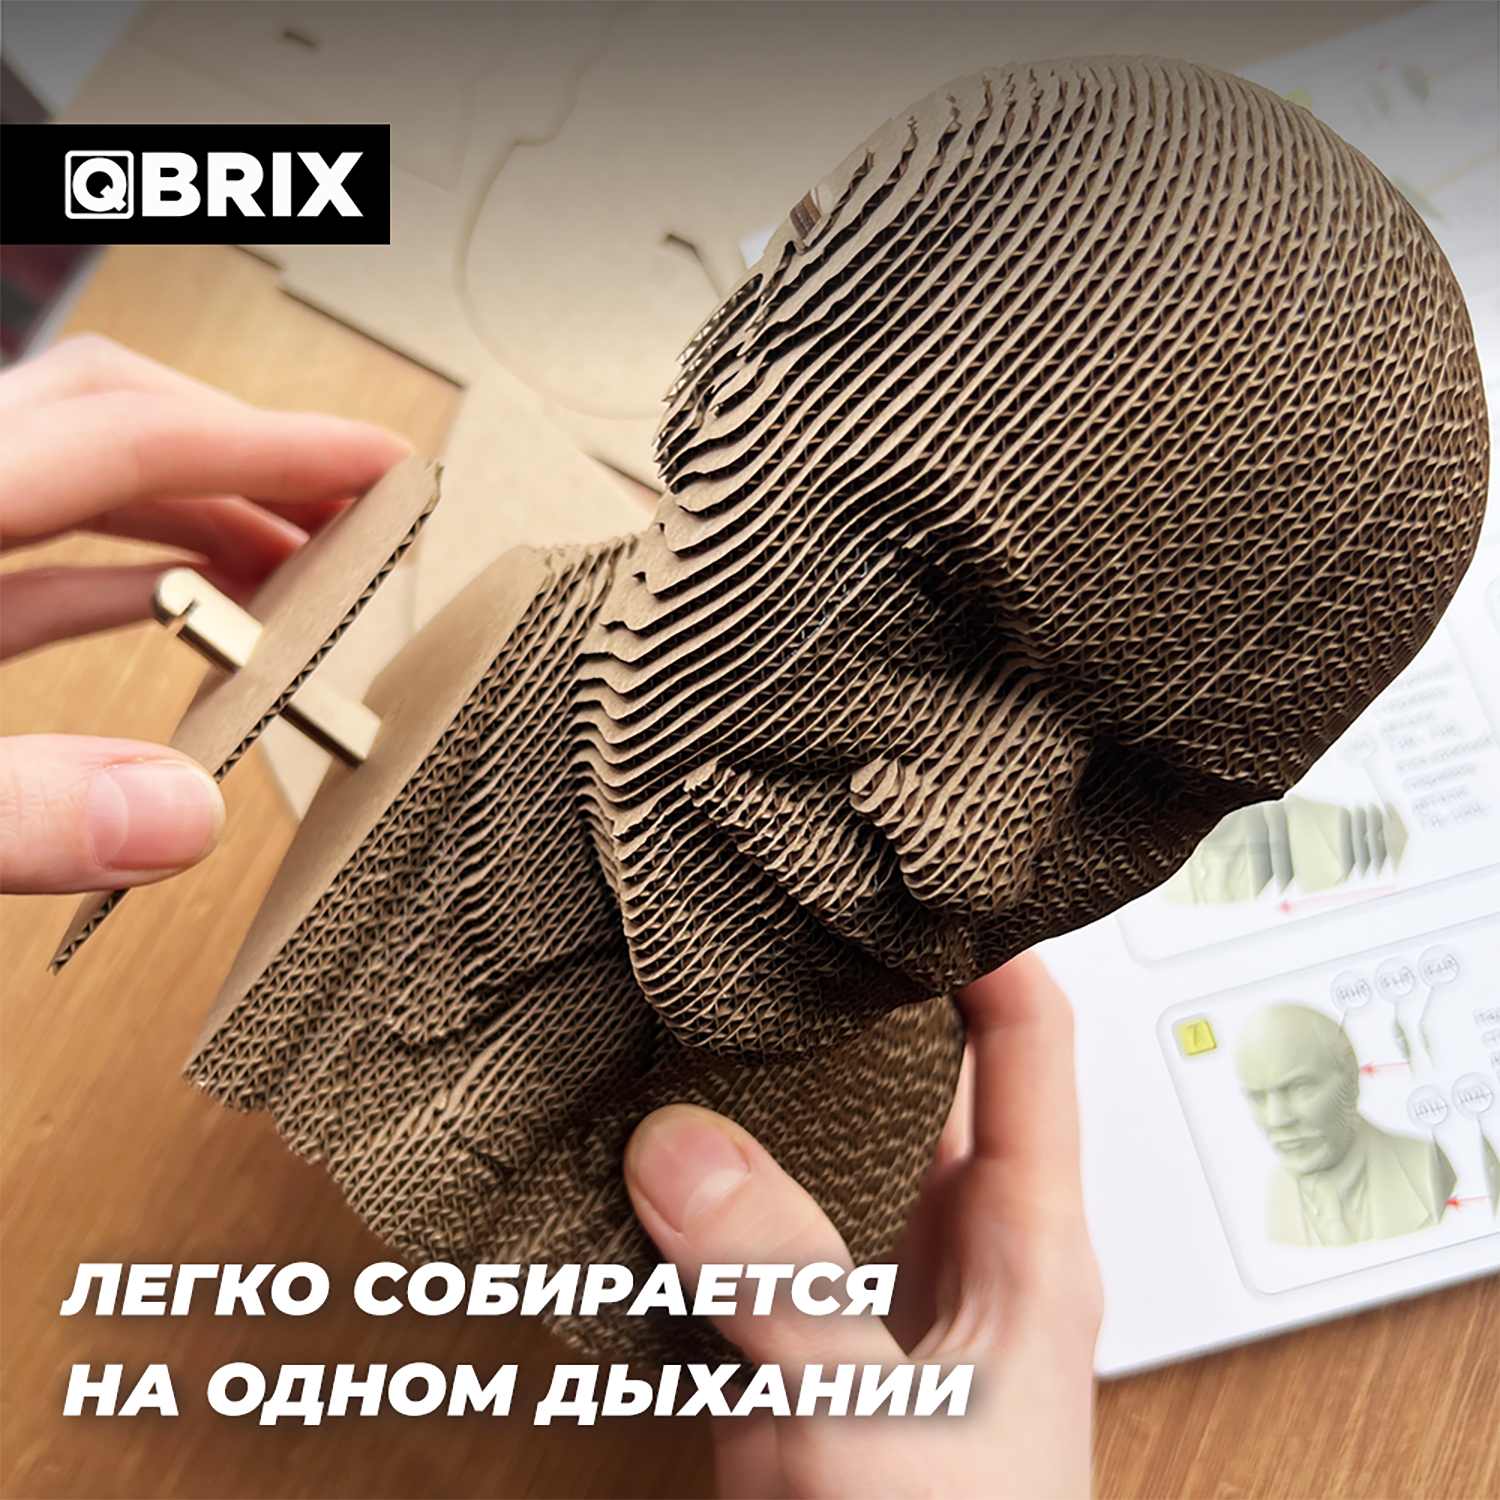 Конструктор QBRIX 3D картонный Ленин 20031 20031 - фото 4